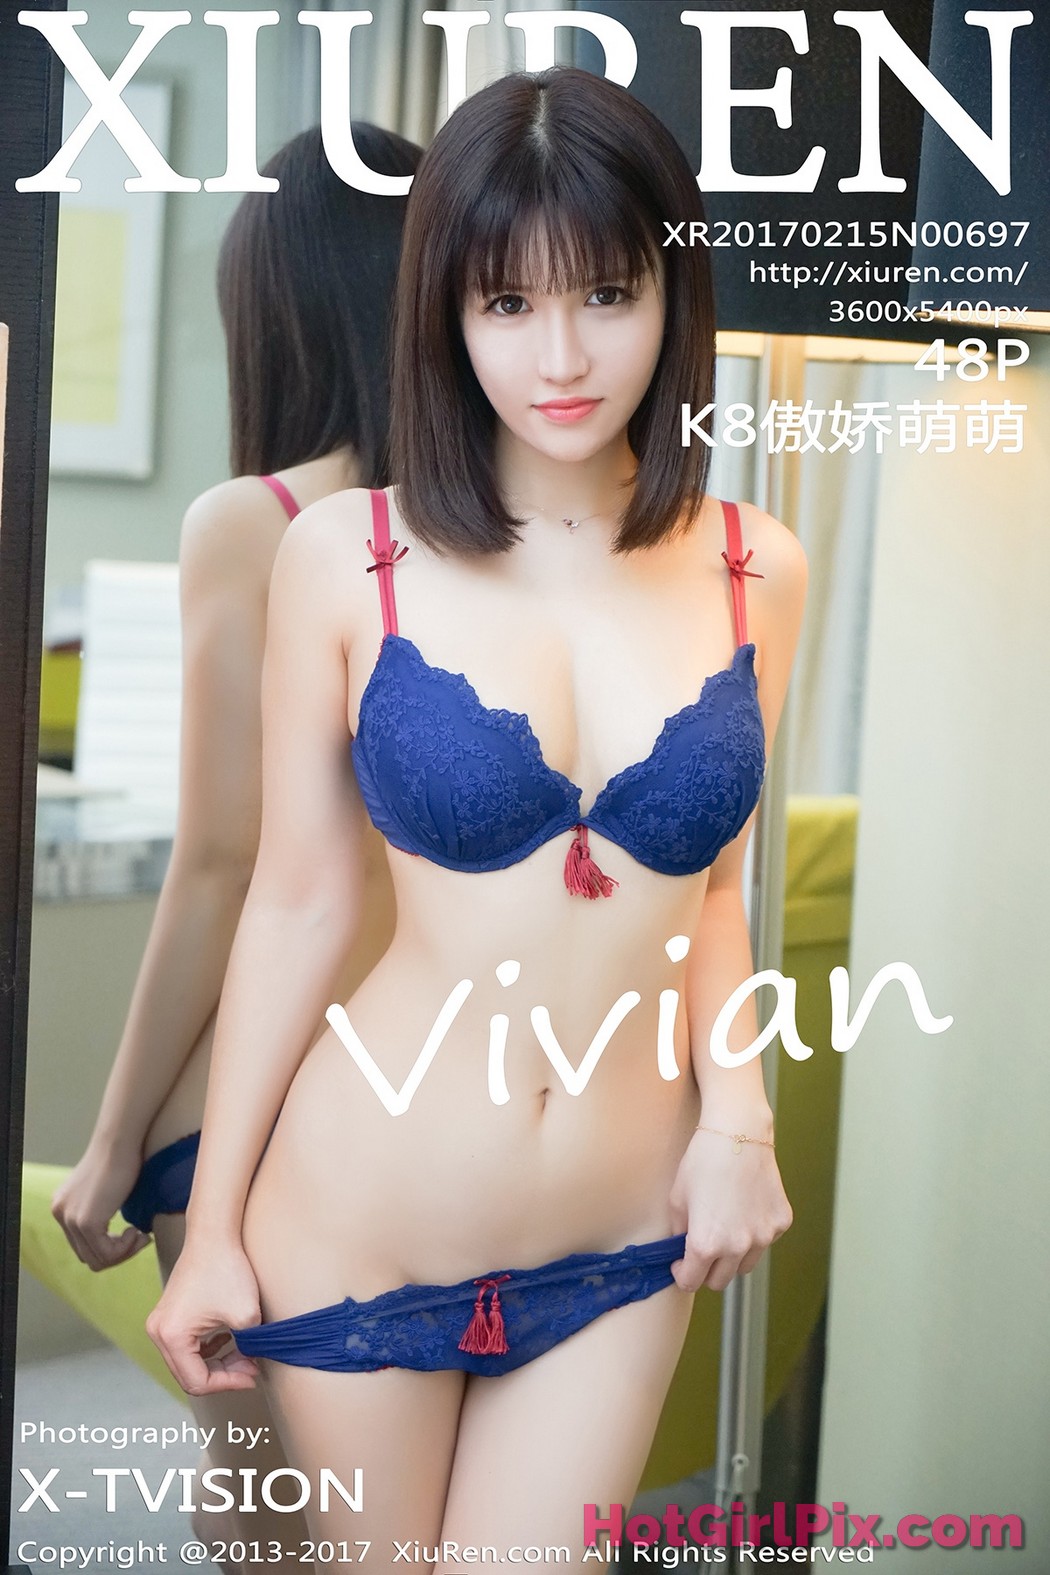 [XIUREN] No.697 K8傲娇萌萌Vivian Aojiao Meng Meng Cover Photo